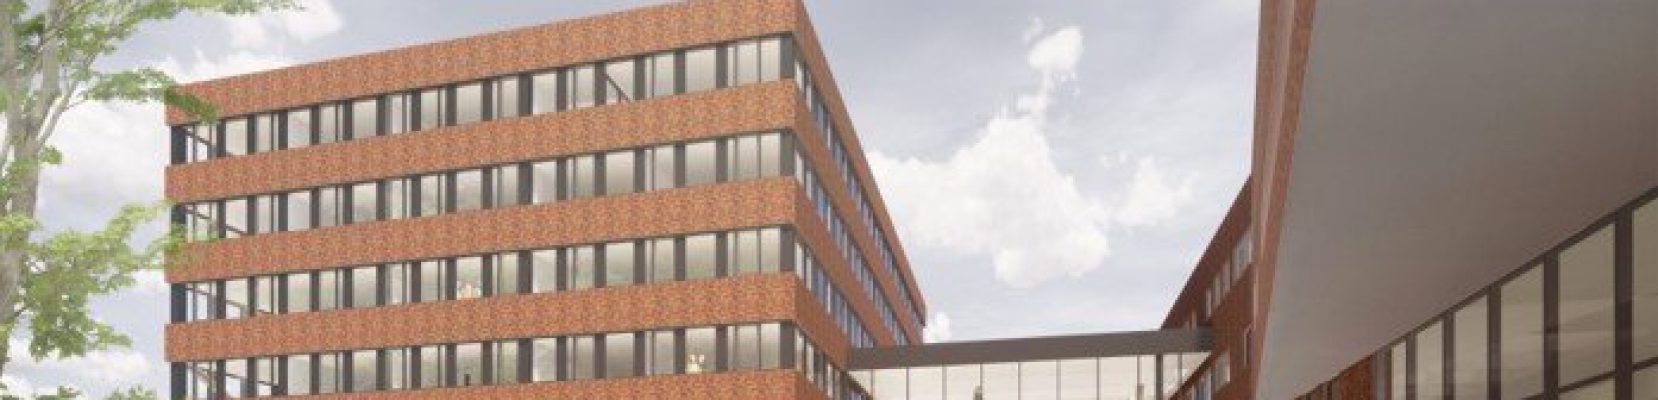 Nieuwbouwproject Hogeschool Leiden - MPenB